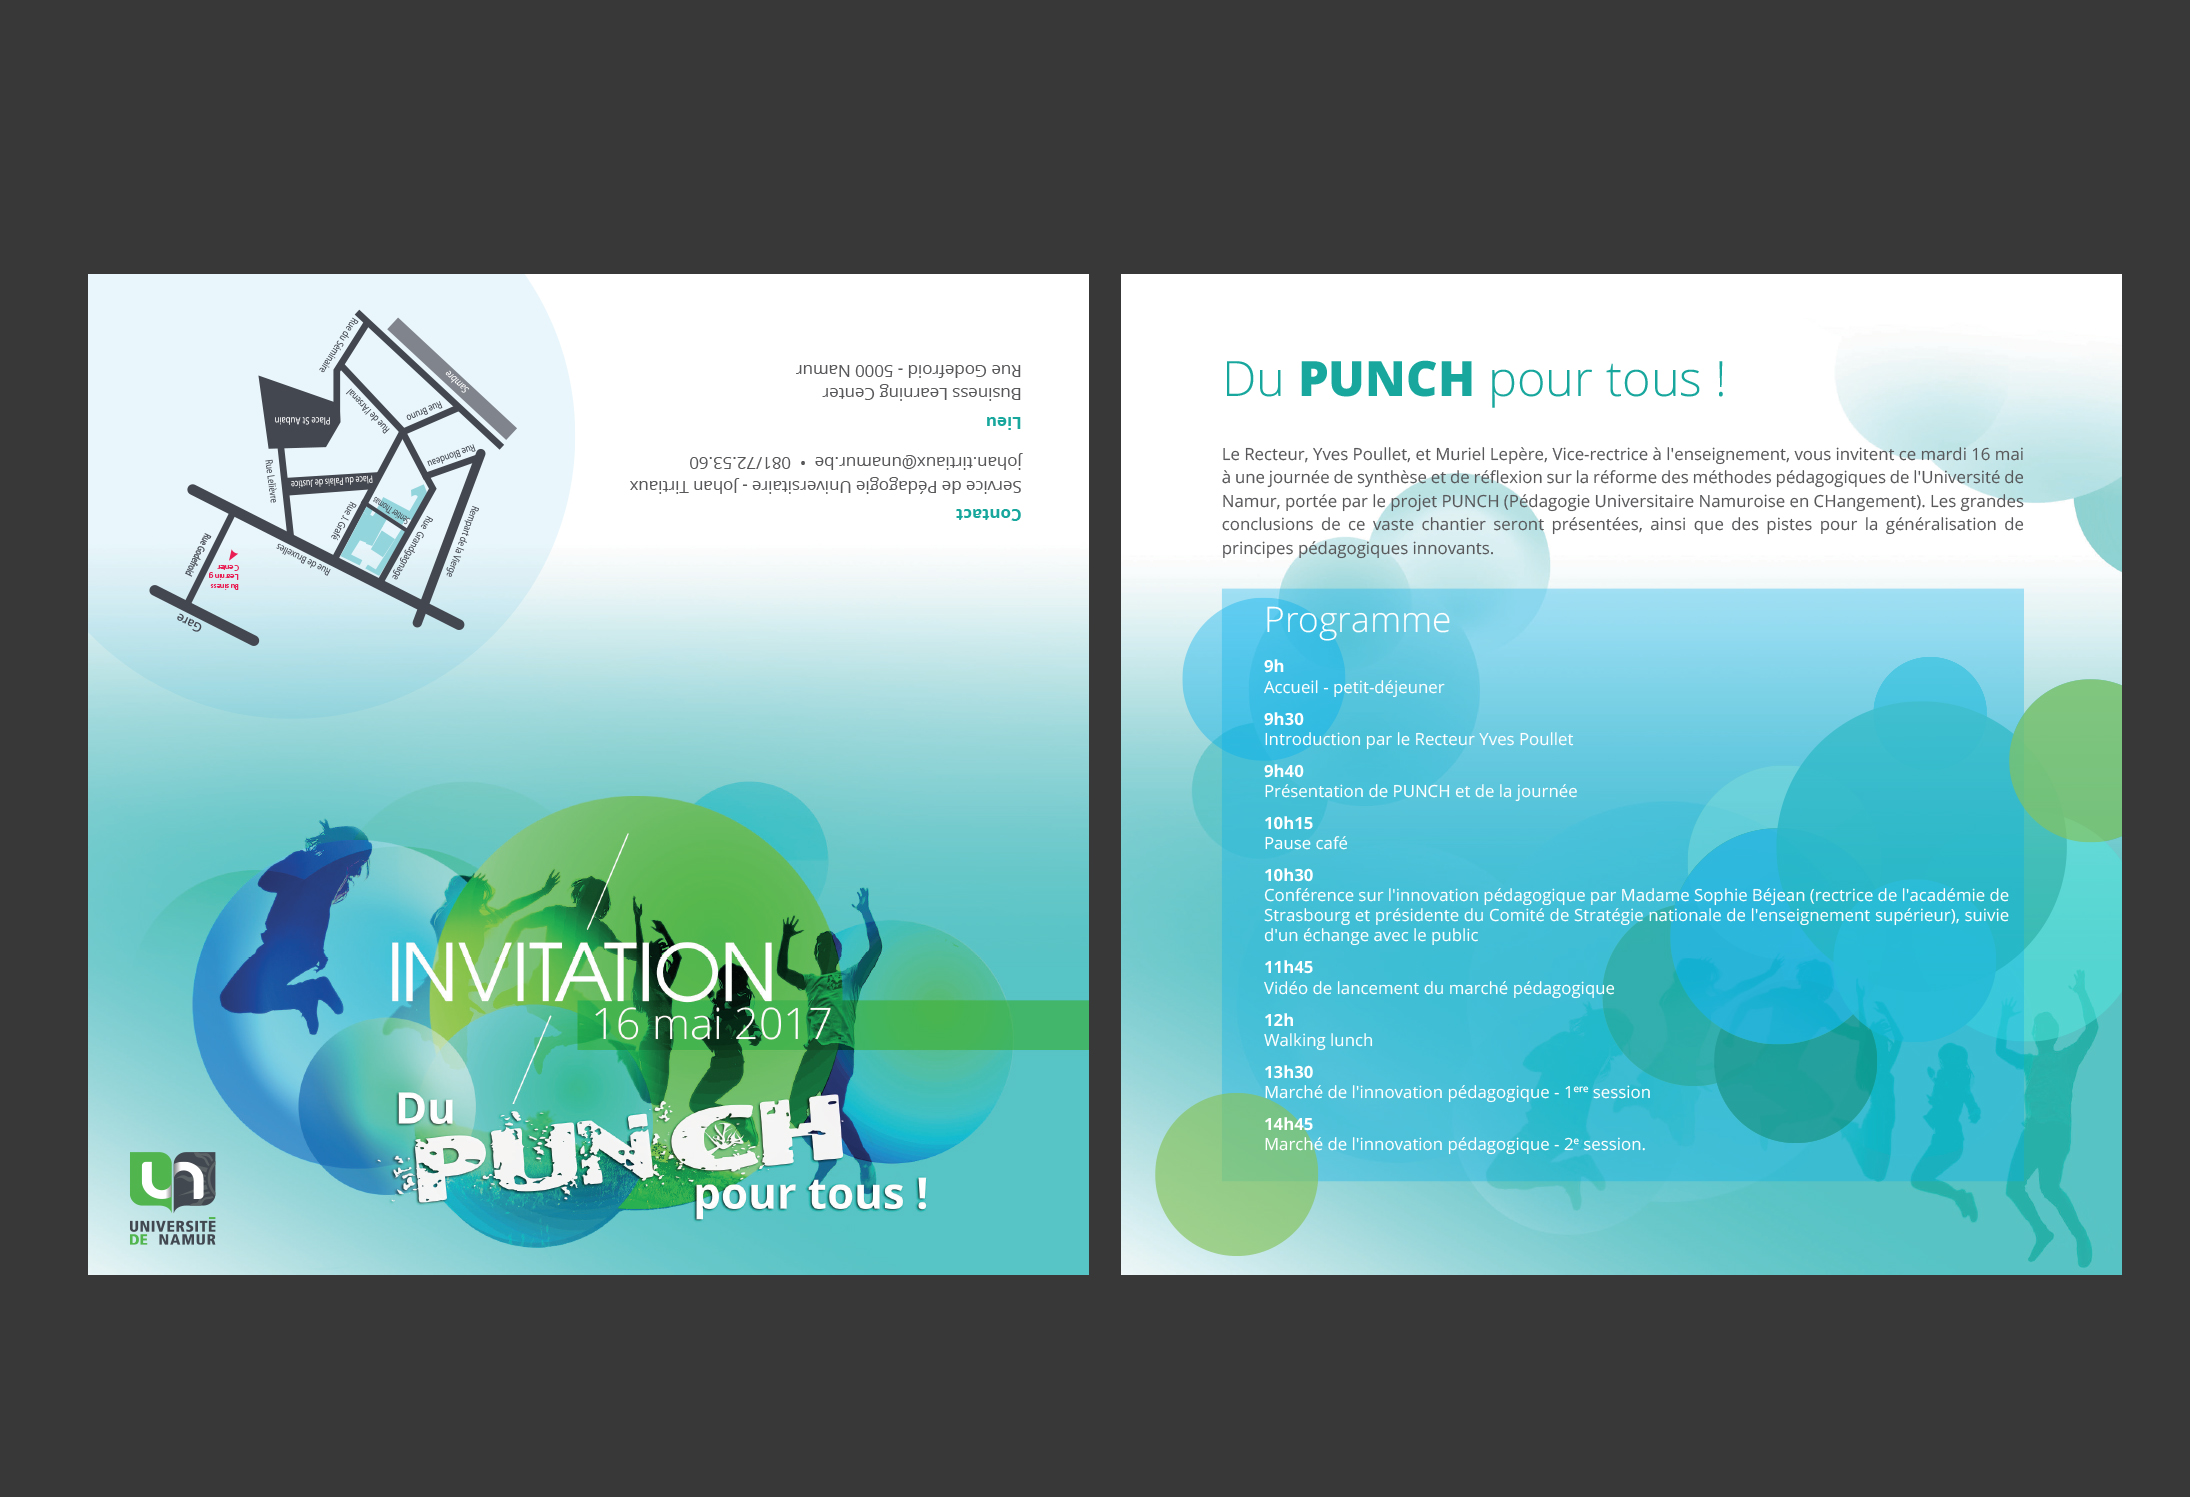 Punch invitation